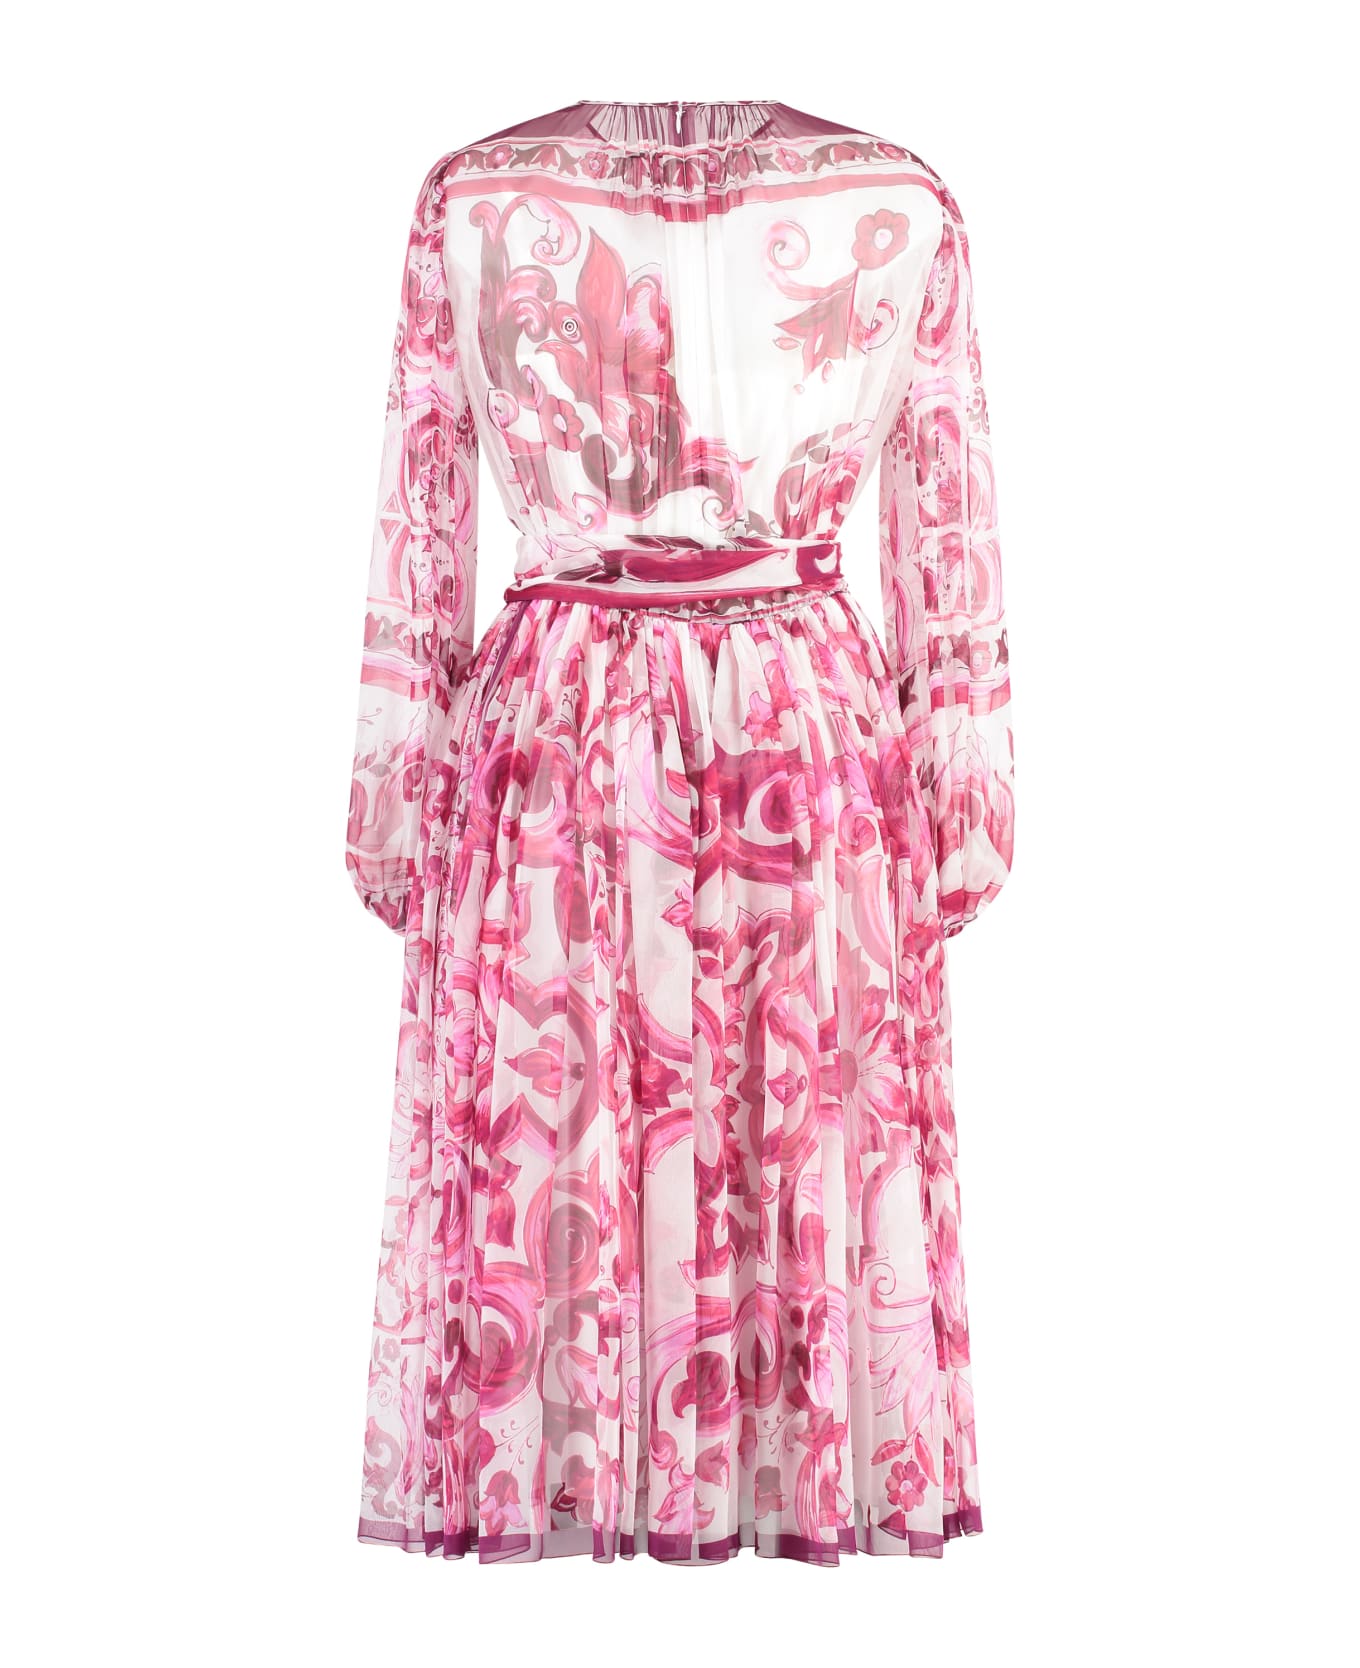 Dolce & Gabbana Chiffon Dress - Pink